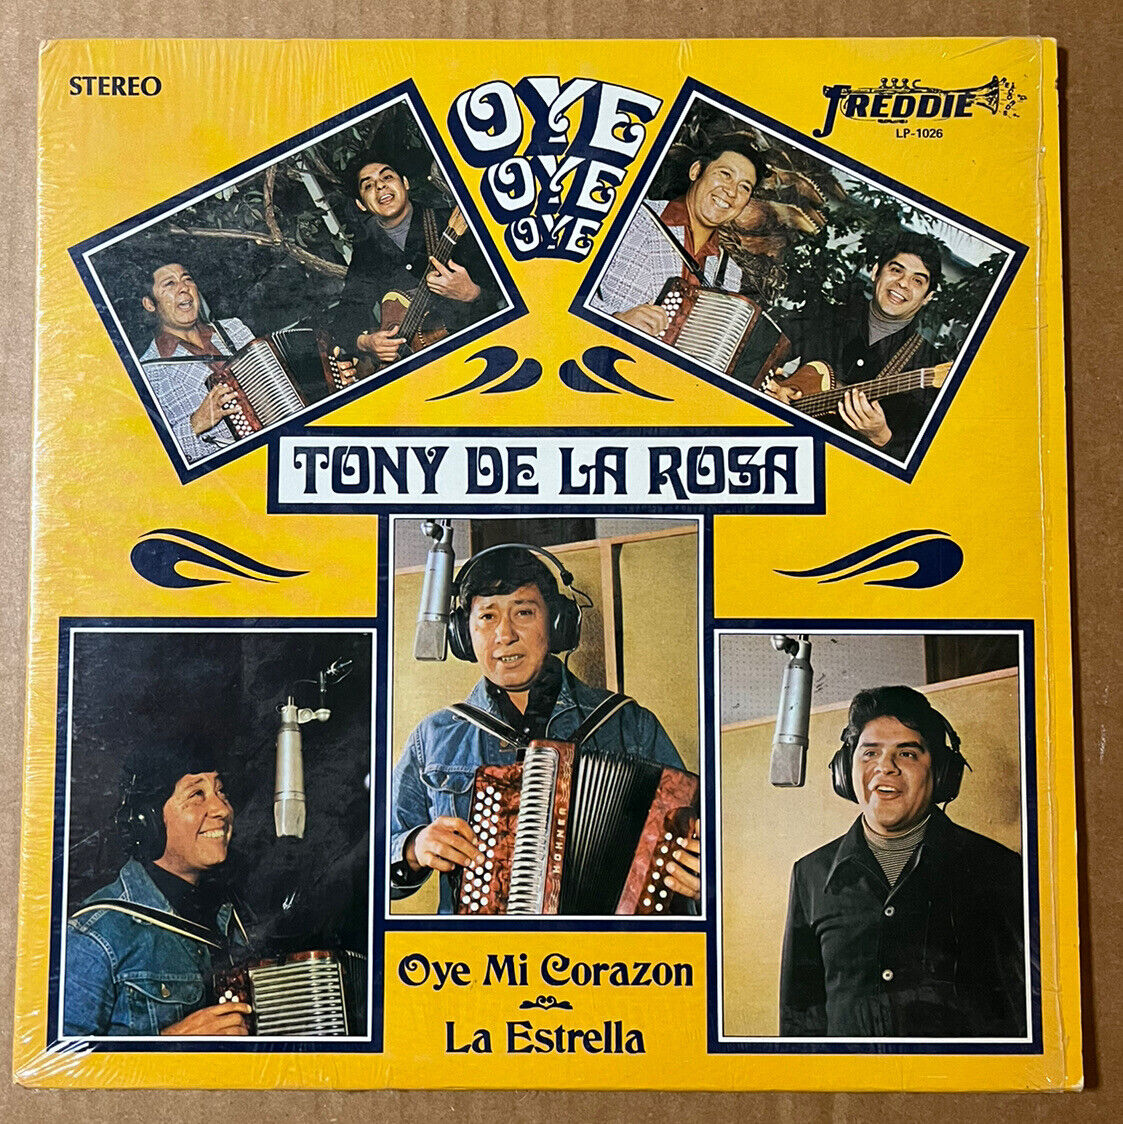 TONY DE LA ROSA  "Oye, Oye, Oye"  '75 Freddie  Rare Tejano LP